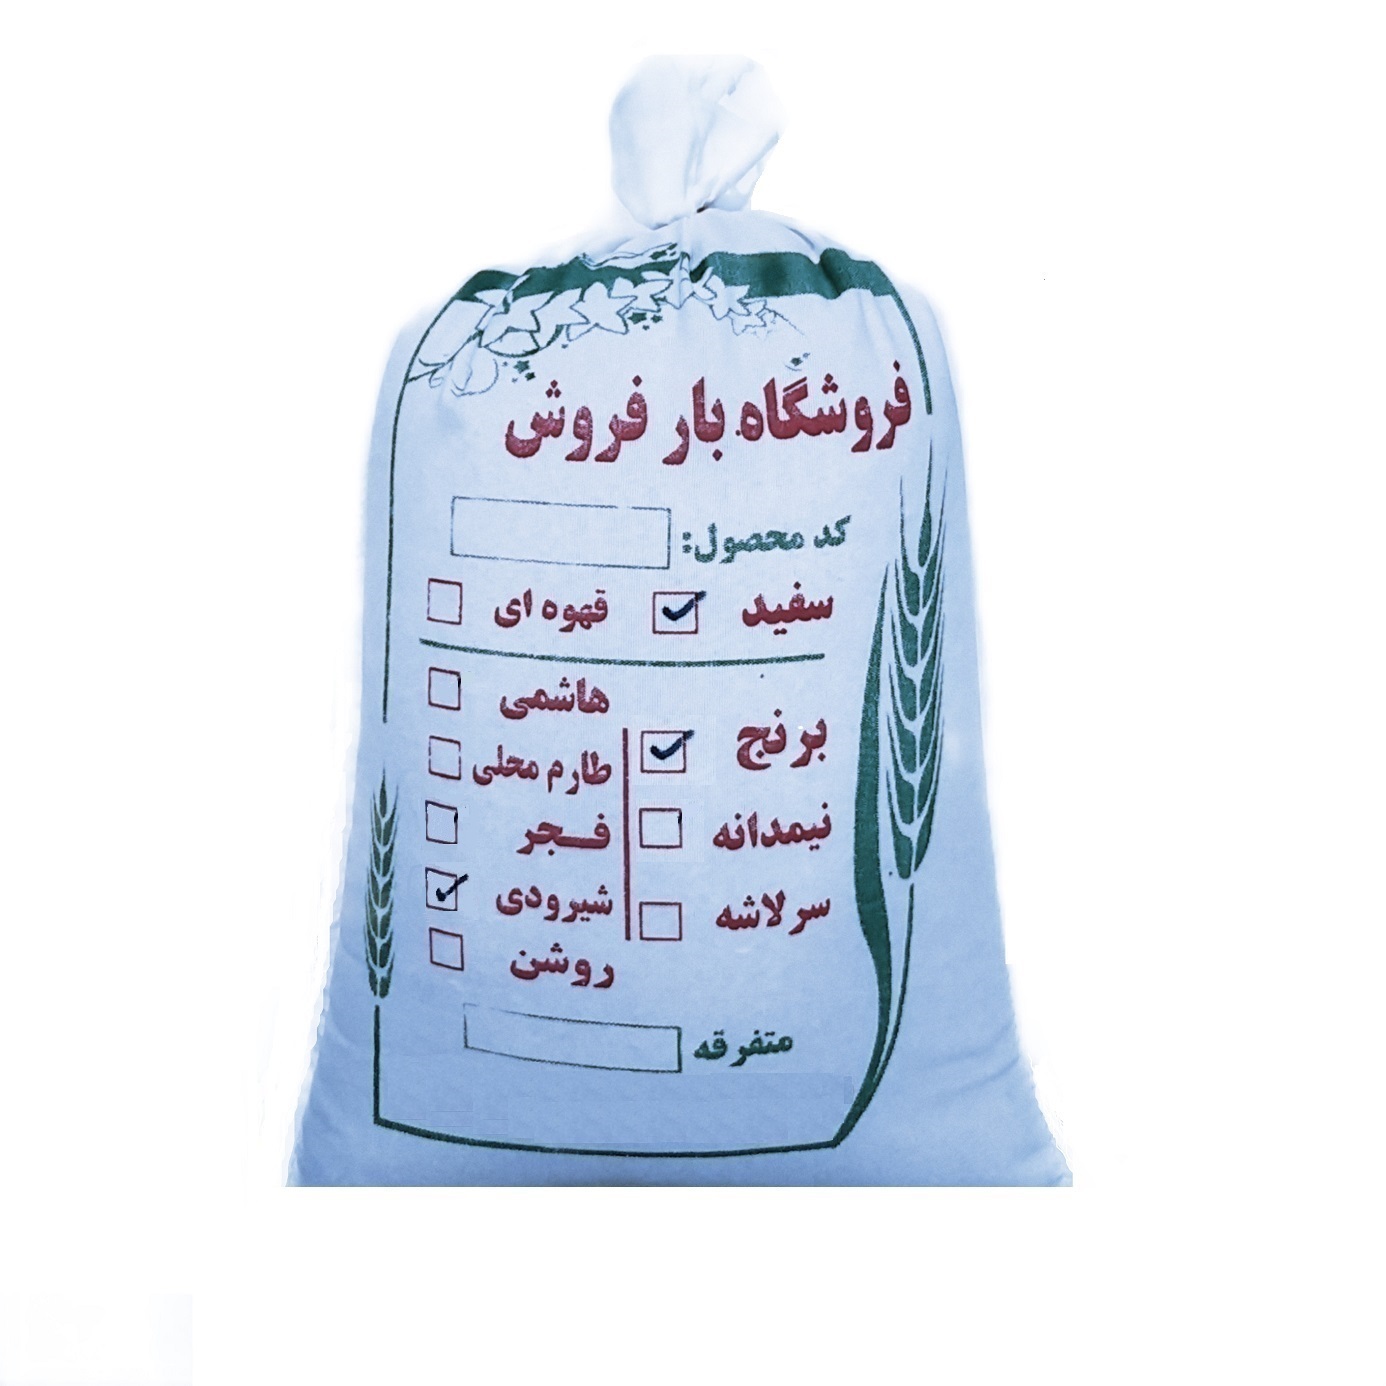 نکته خرید - قیمت روز برنج شیرودی بارفروش - 10 کیلوگرم خرید